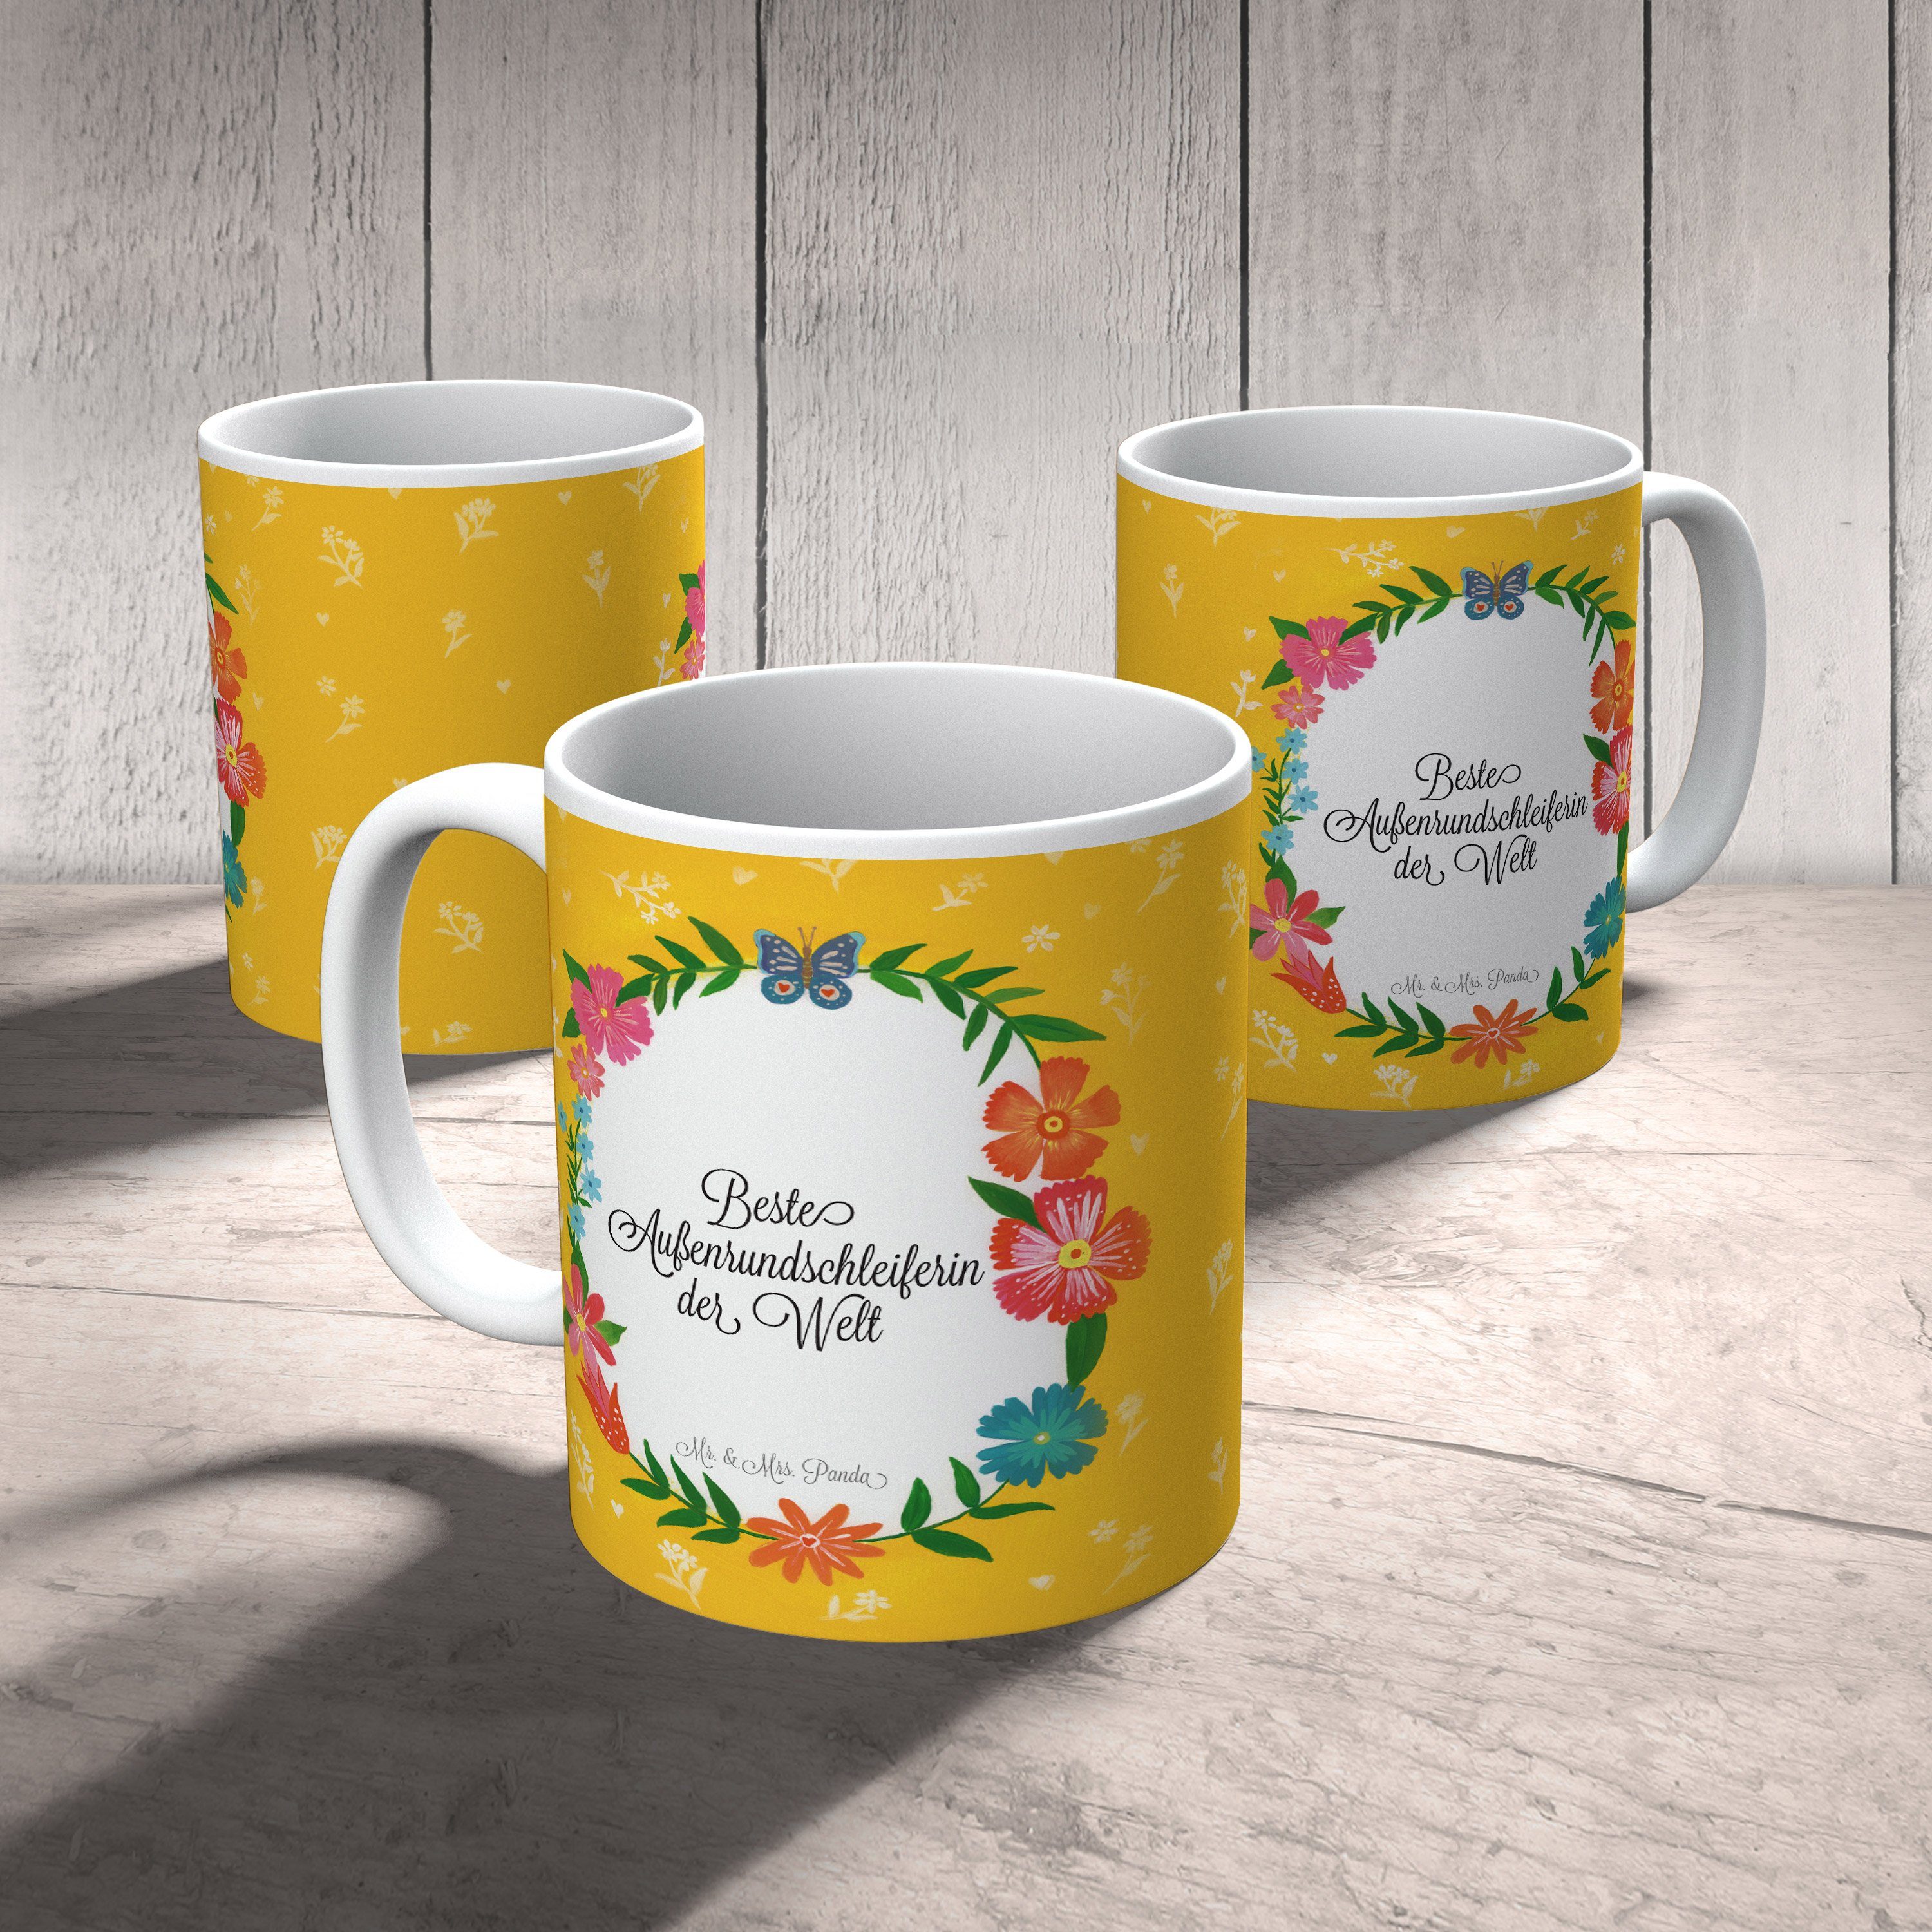 Mr. & Mrs. Panda Tasse Kaffeebecher, Außenrundschleiferin Ausbildung, - Keramik Abschied, Geschenk